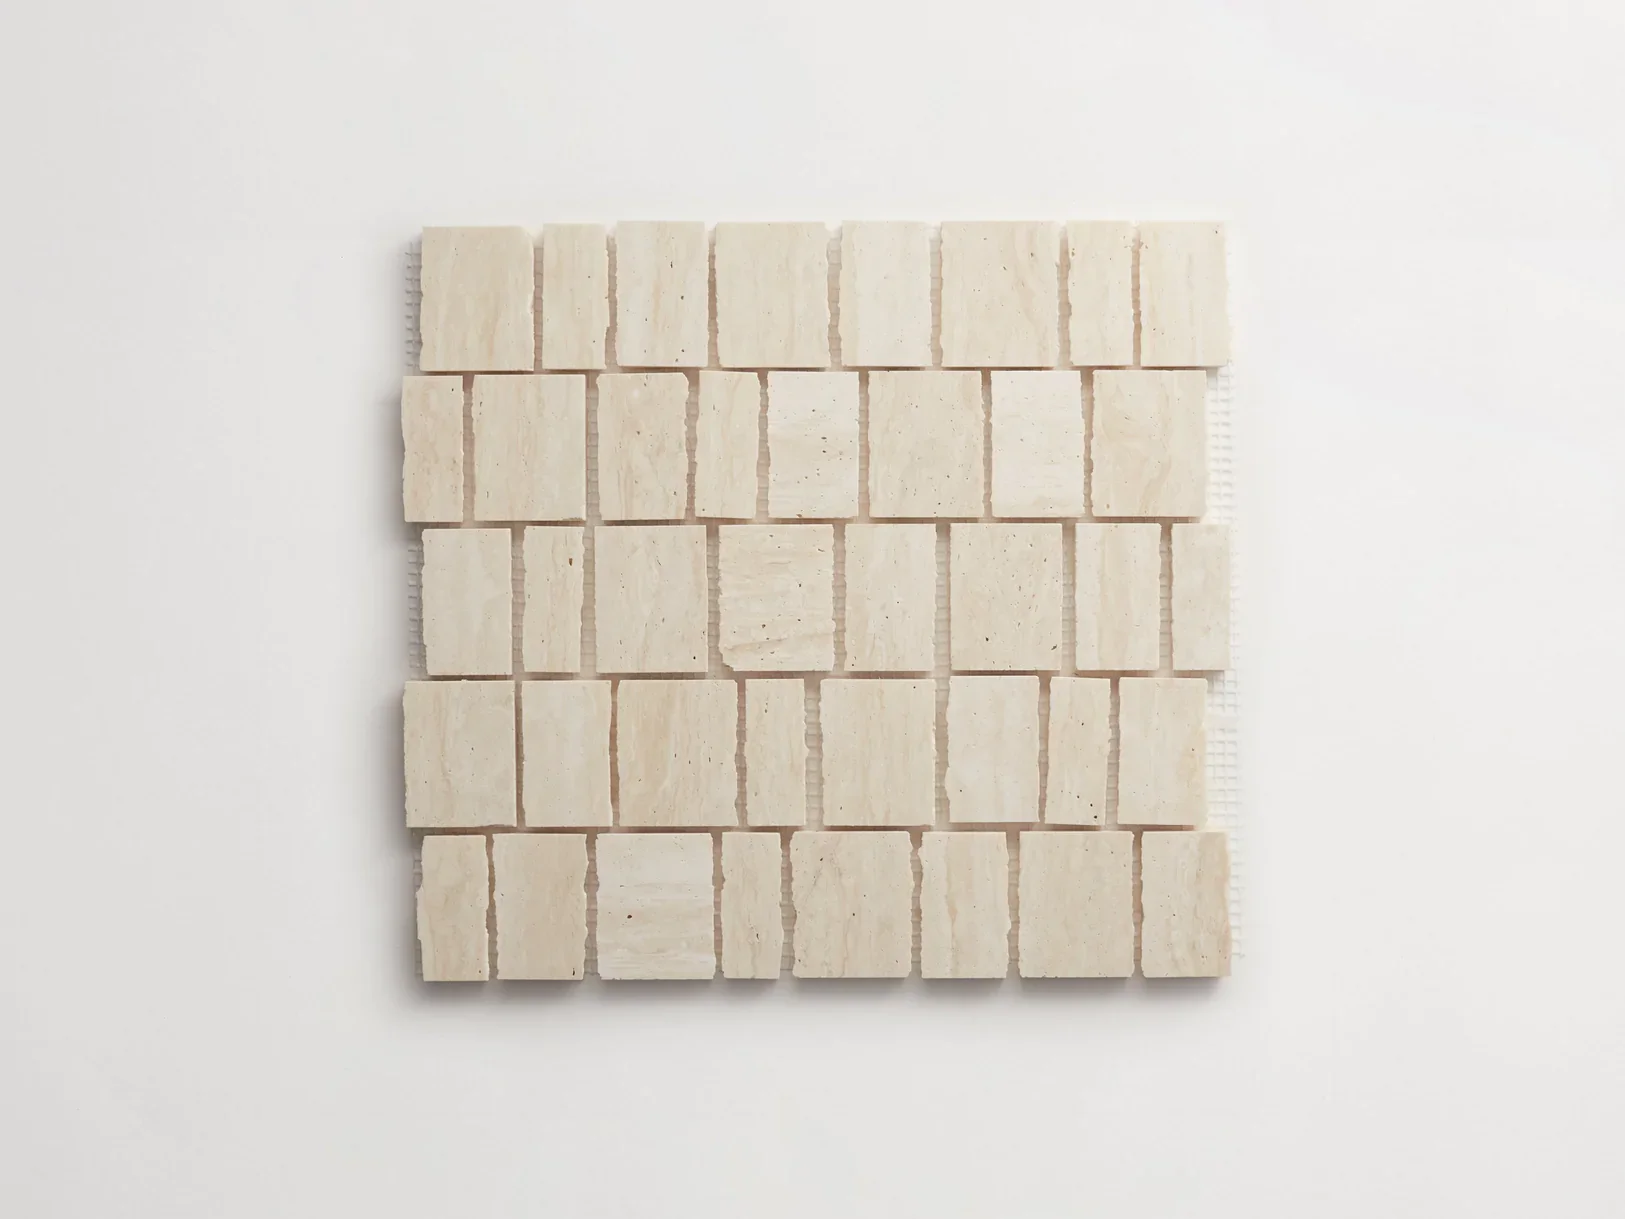 white tile